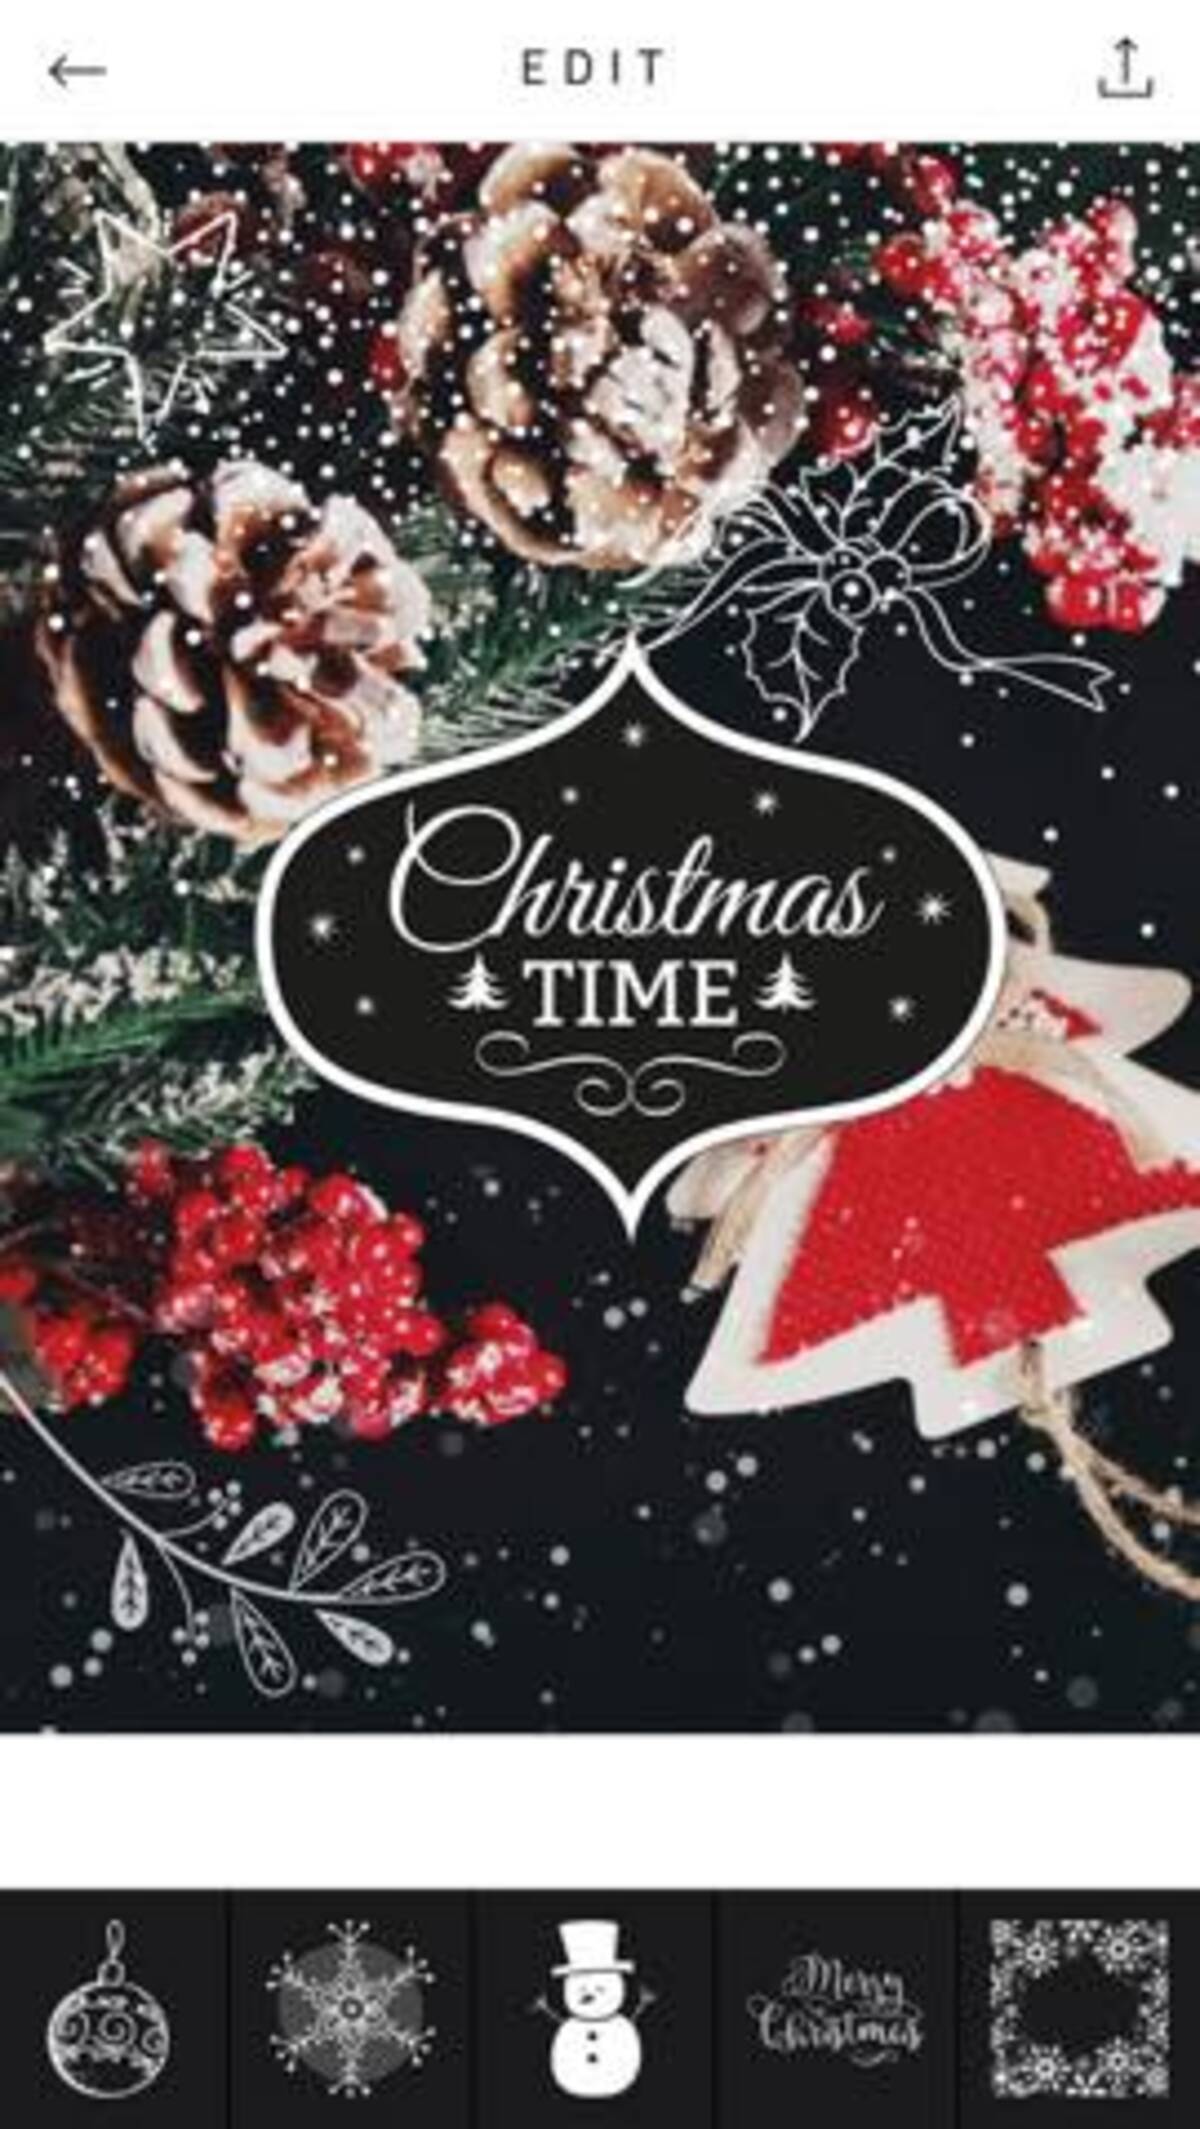 今日の無料アプリ 1円 無料 クリスマステーマの写真加工アプリ Xmas Cam 他 2本を紹介 16年12月21日 エキサイトニュース